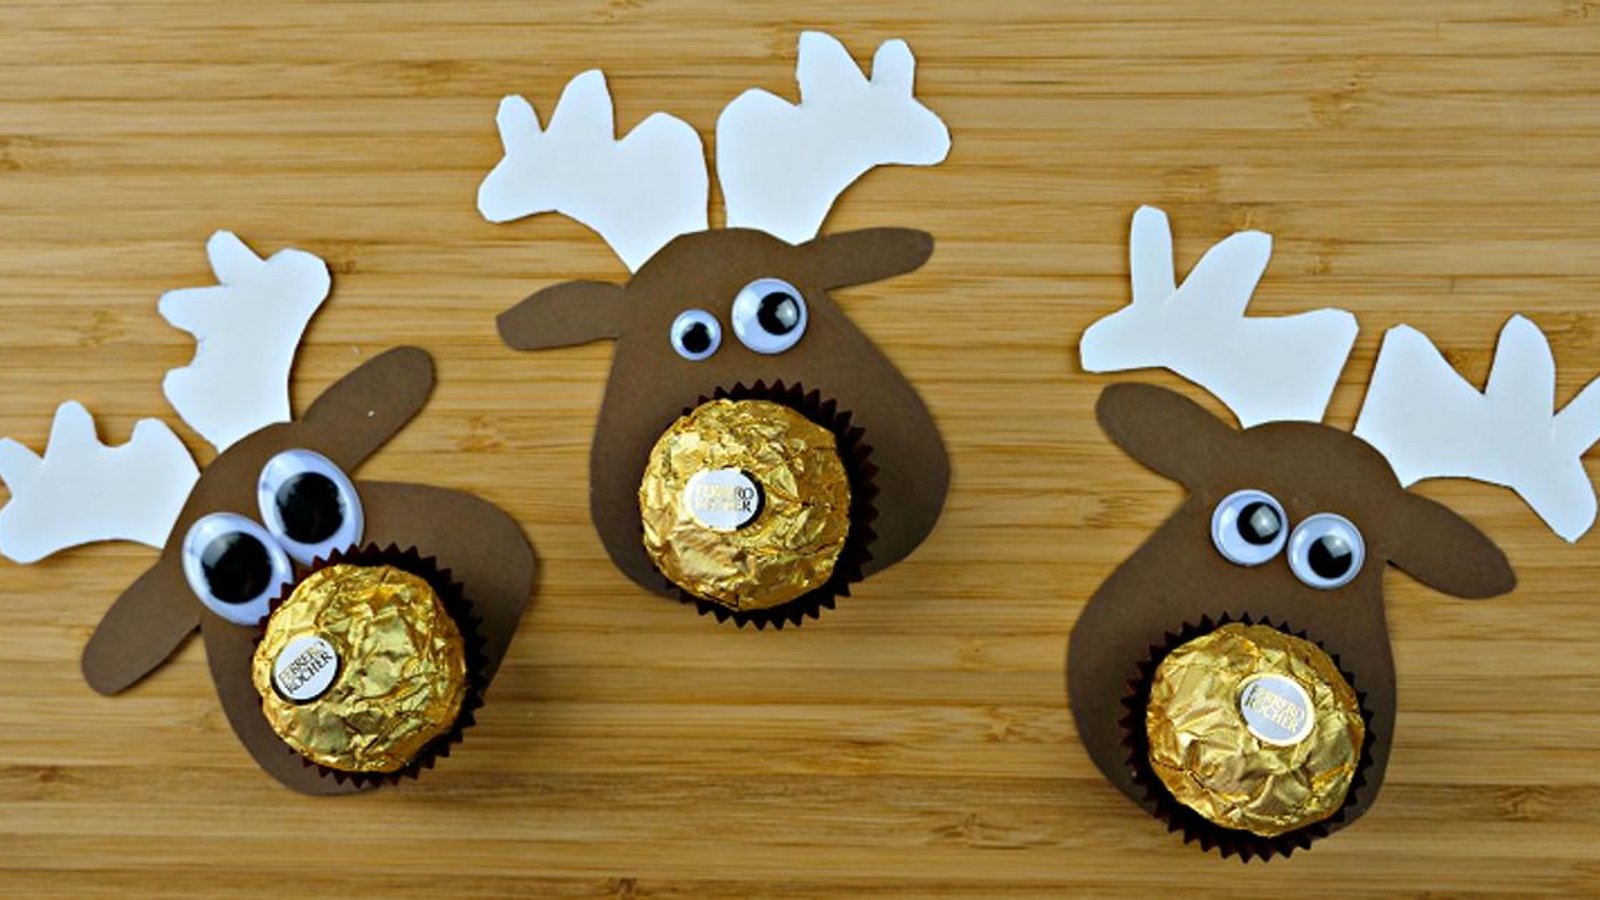 Apprenez à faire un Rudolph avec un chocolat pour l'offrir en cadeau! 